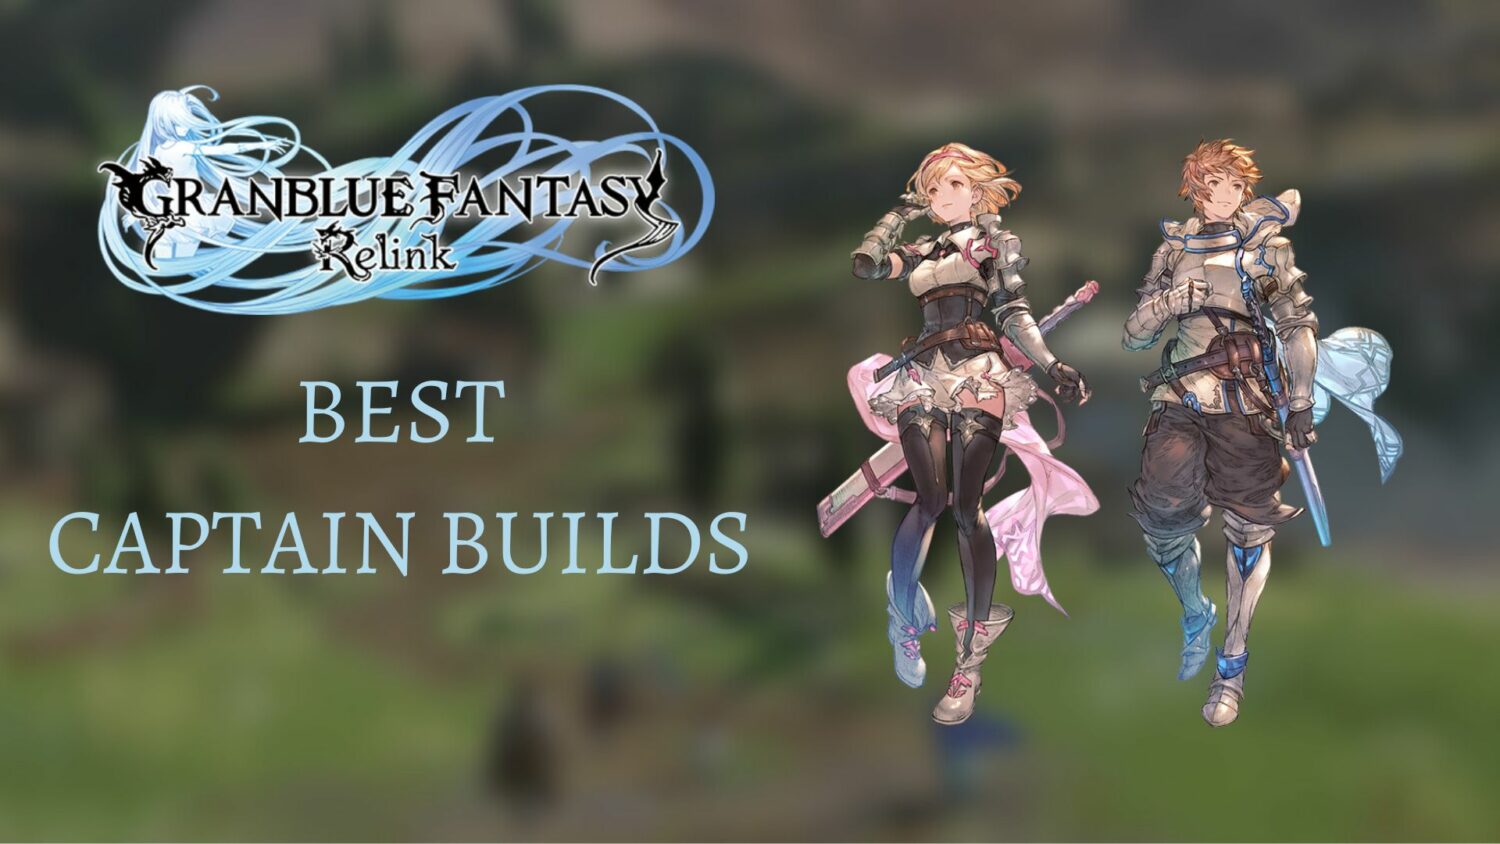 Granblue Fantasy Relink: Best Captain Builds